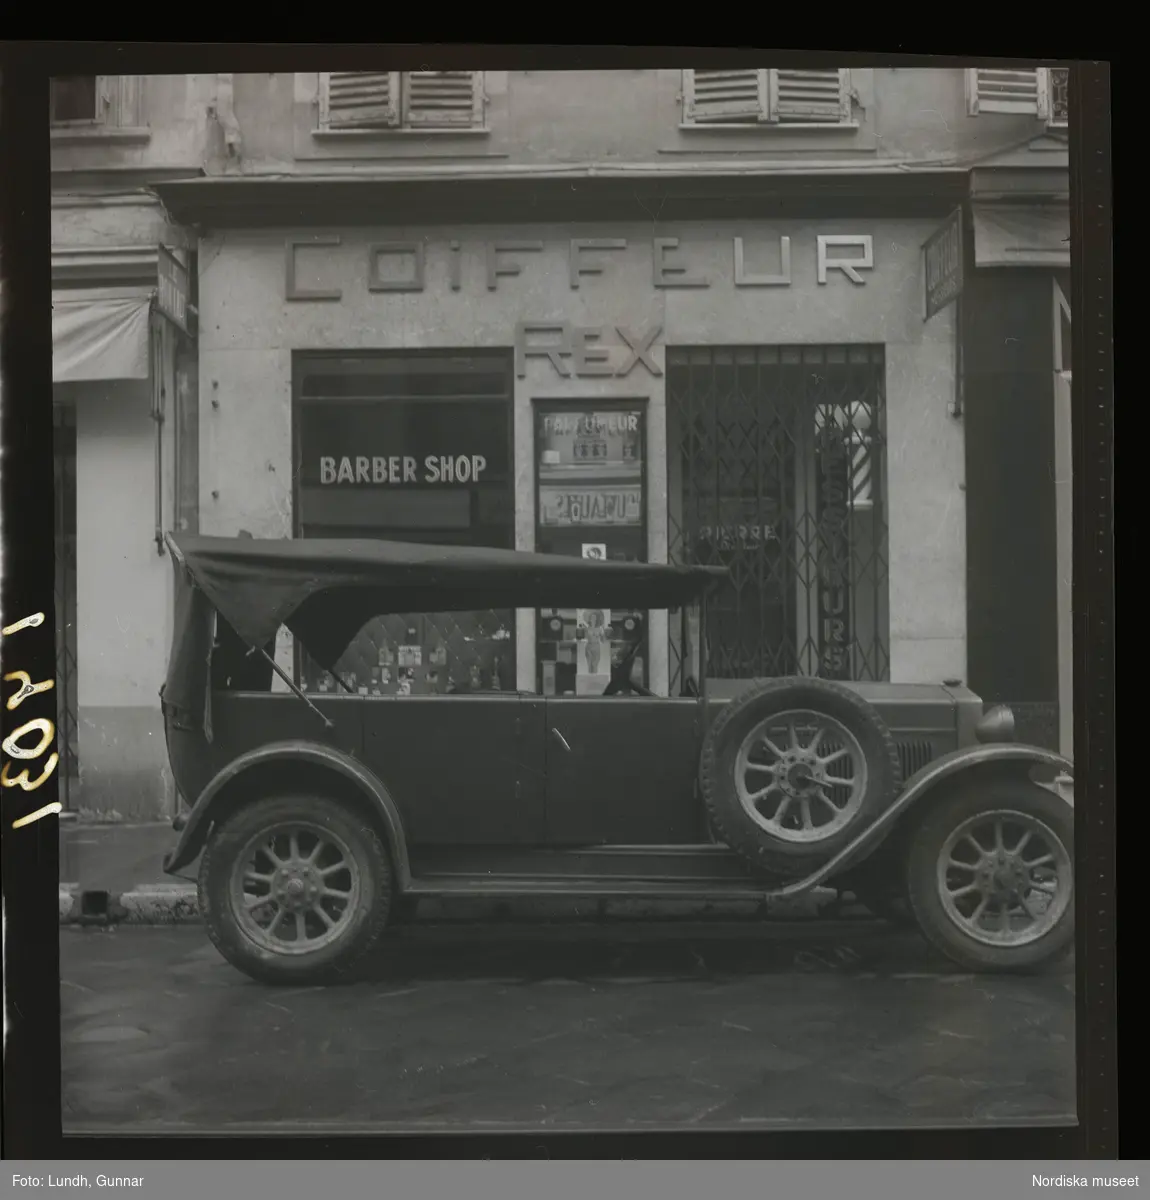 1950. Frankrike. Bil parkerad utanför en frisörlokal